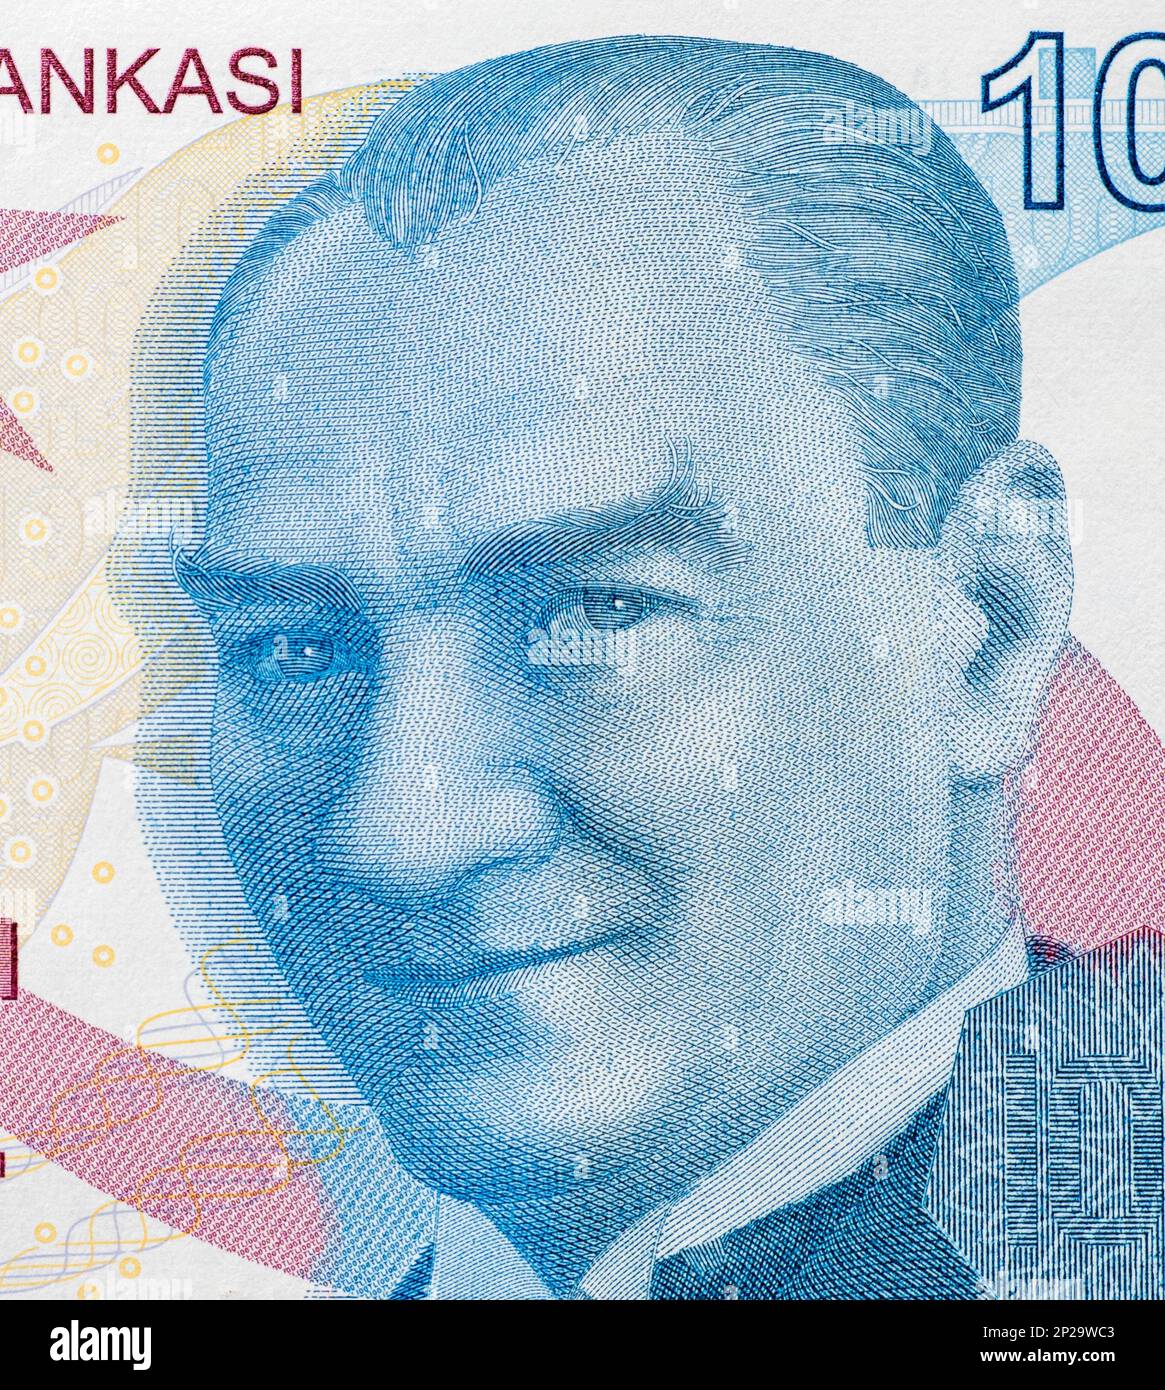 Gros plan de 100 billets de lire turque avec portrait de Mustafa Kemal Ataturk Banque D'Images